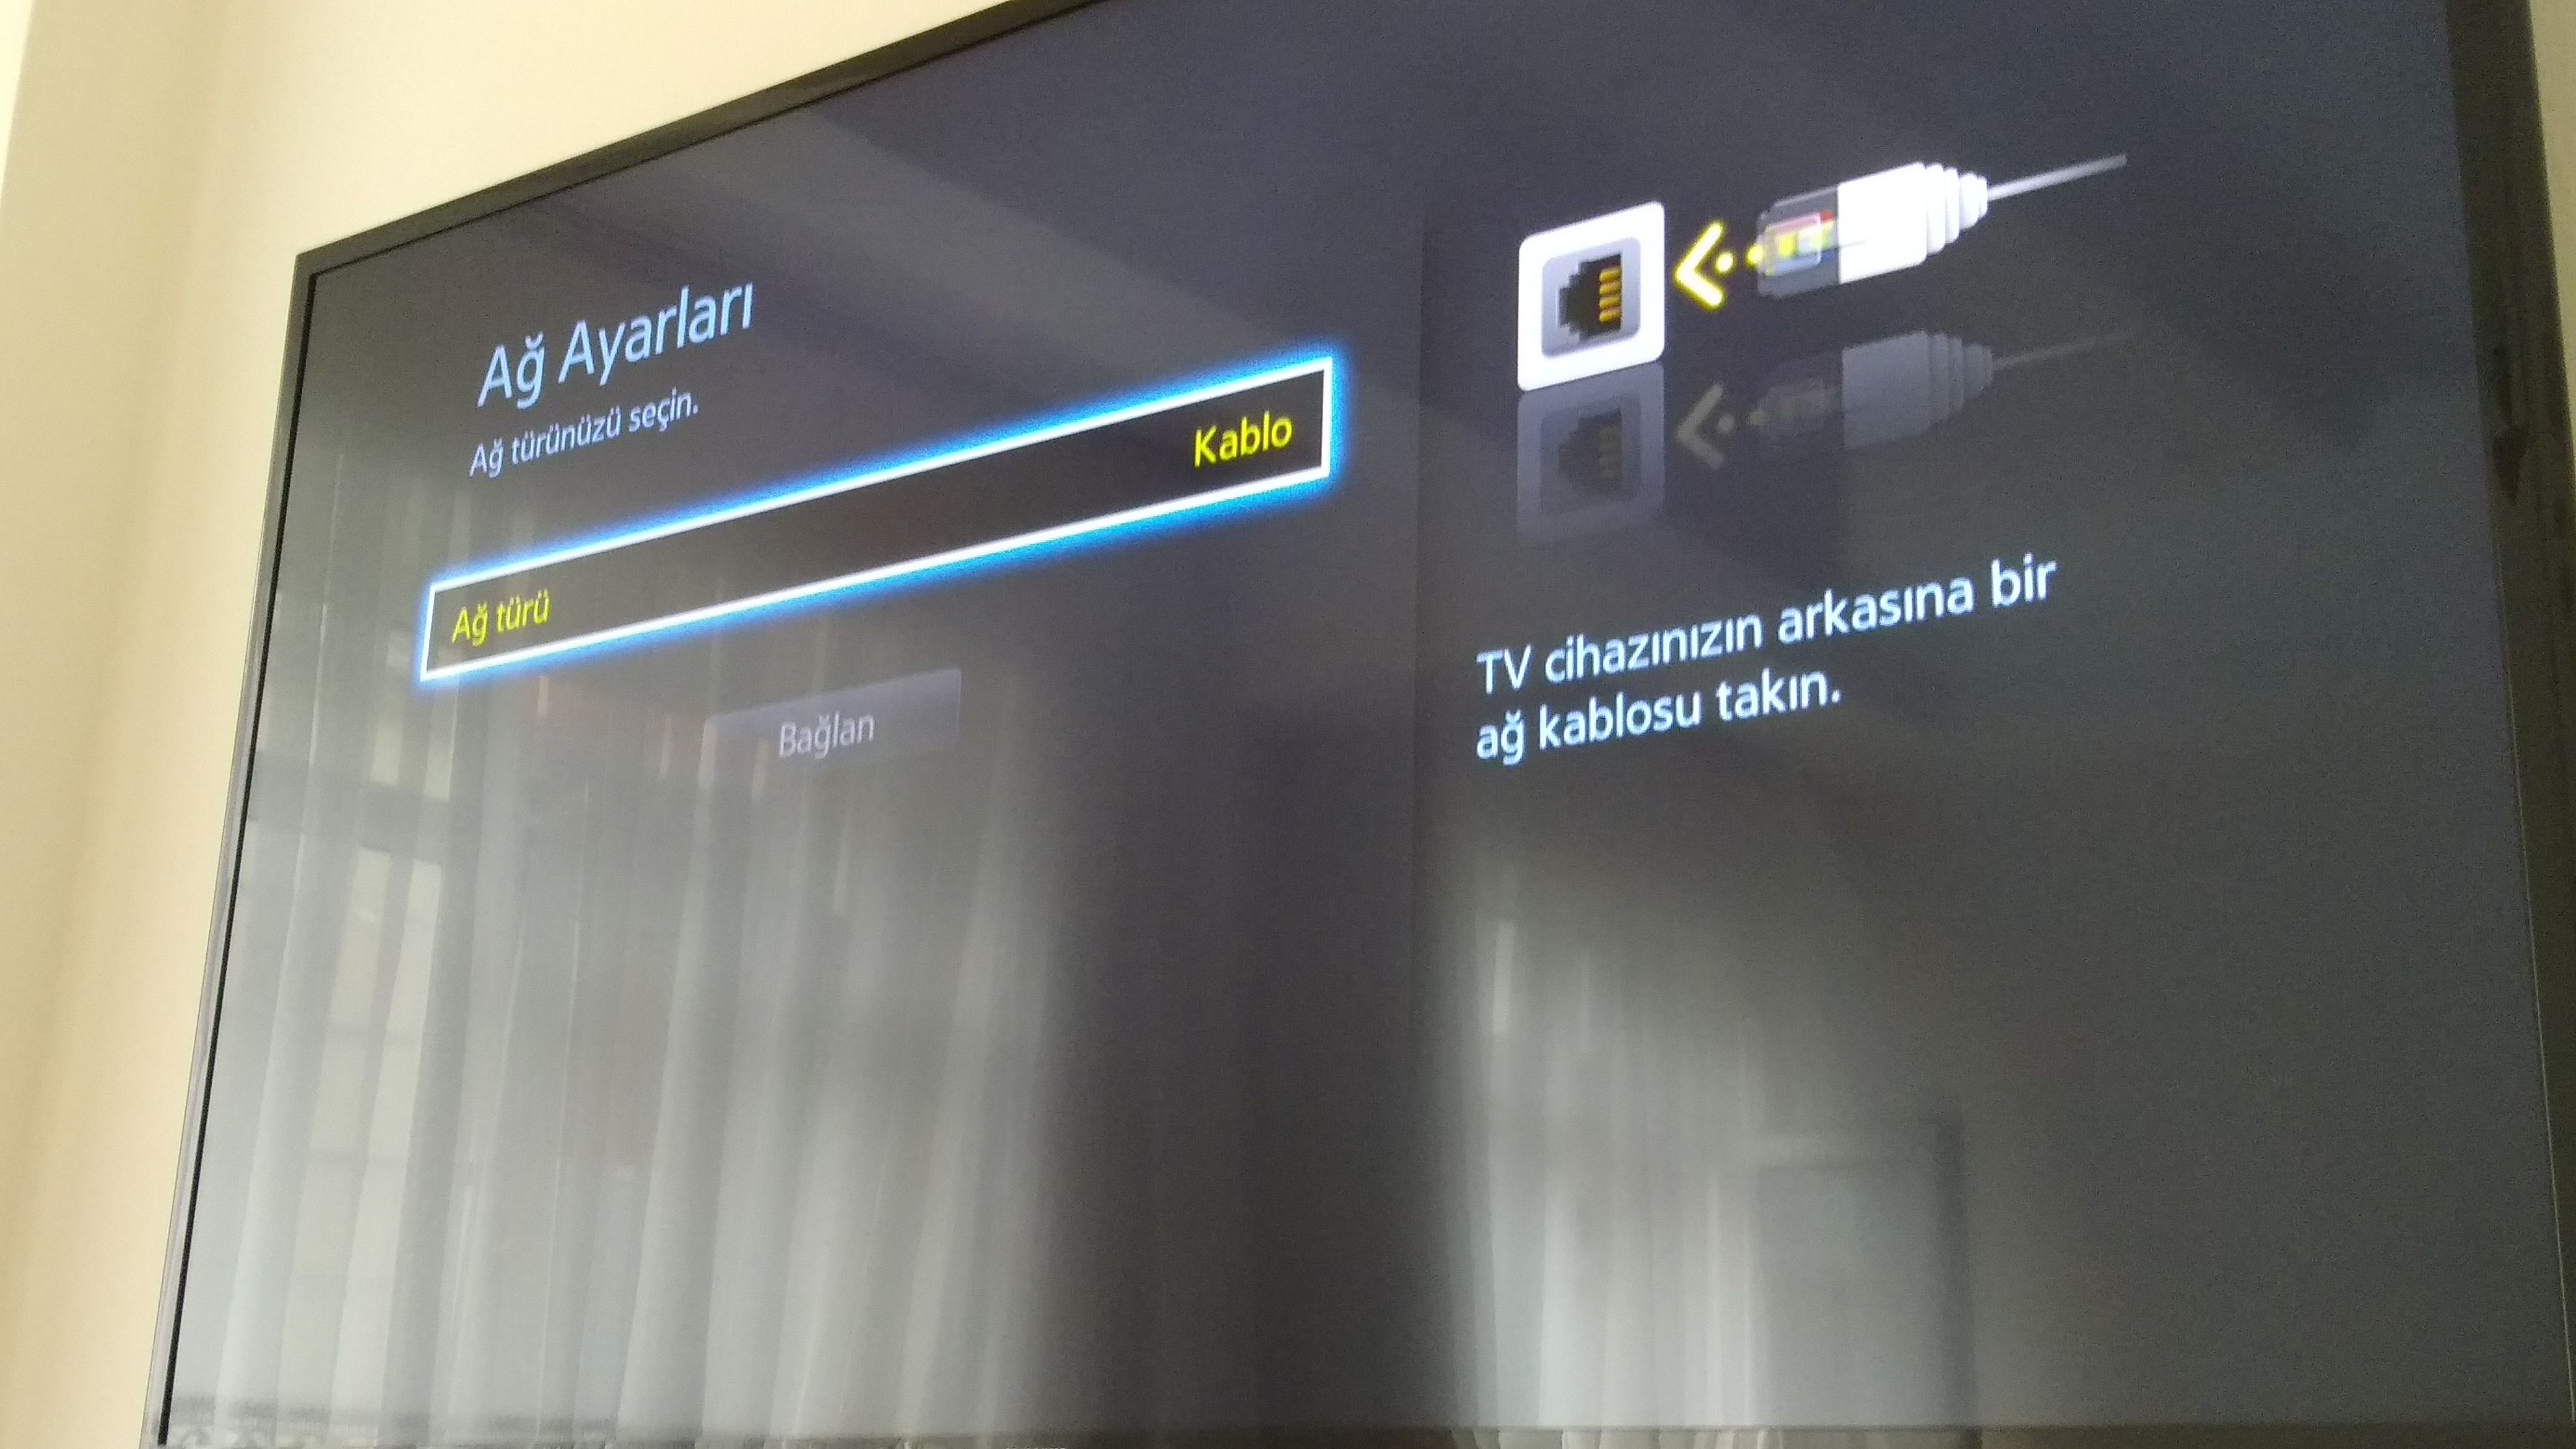 Samsung Smart TV internete bağlanmıyor | Technopat Sosyal